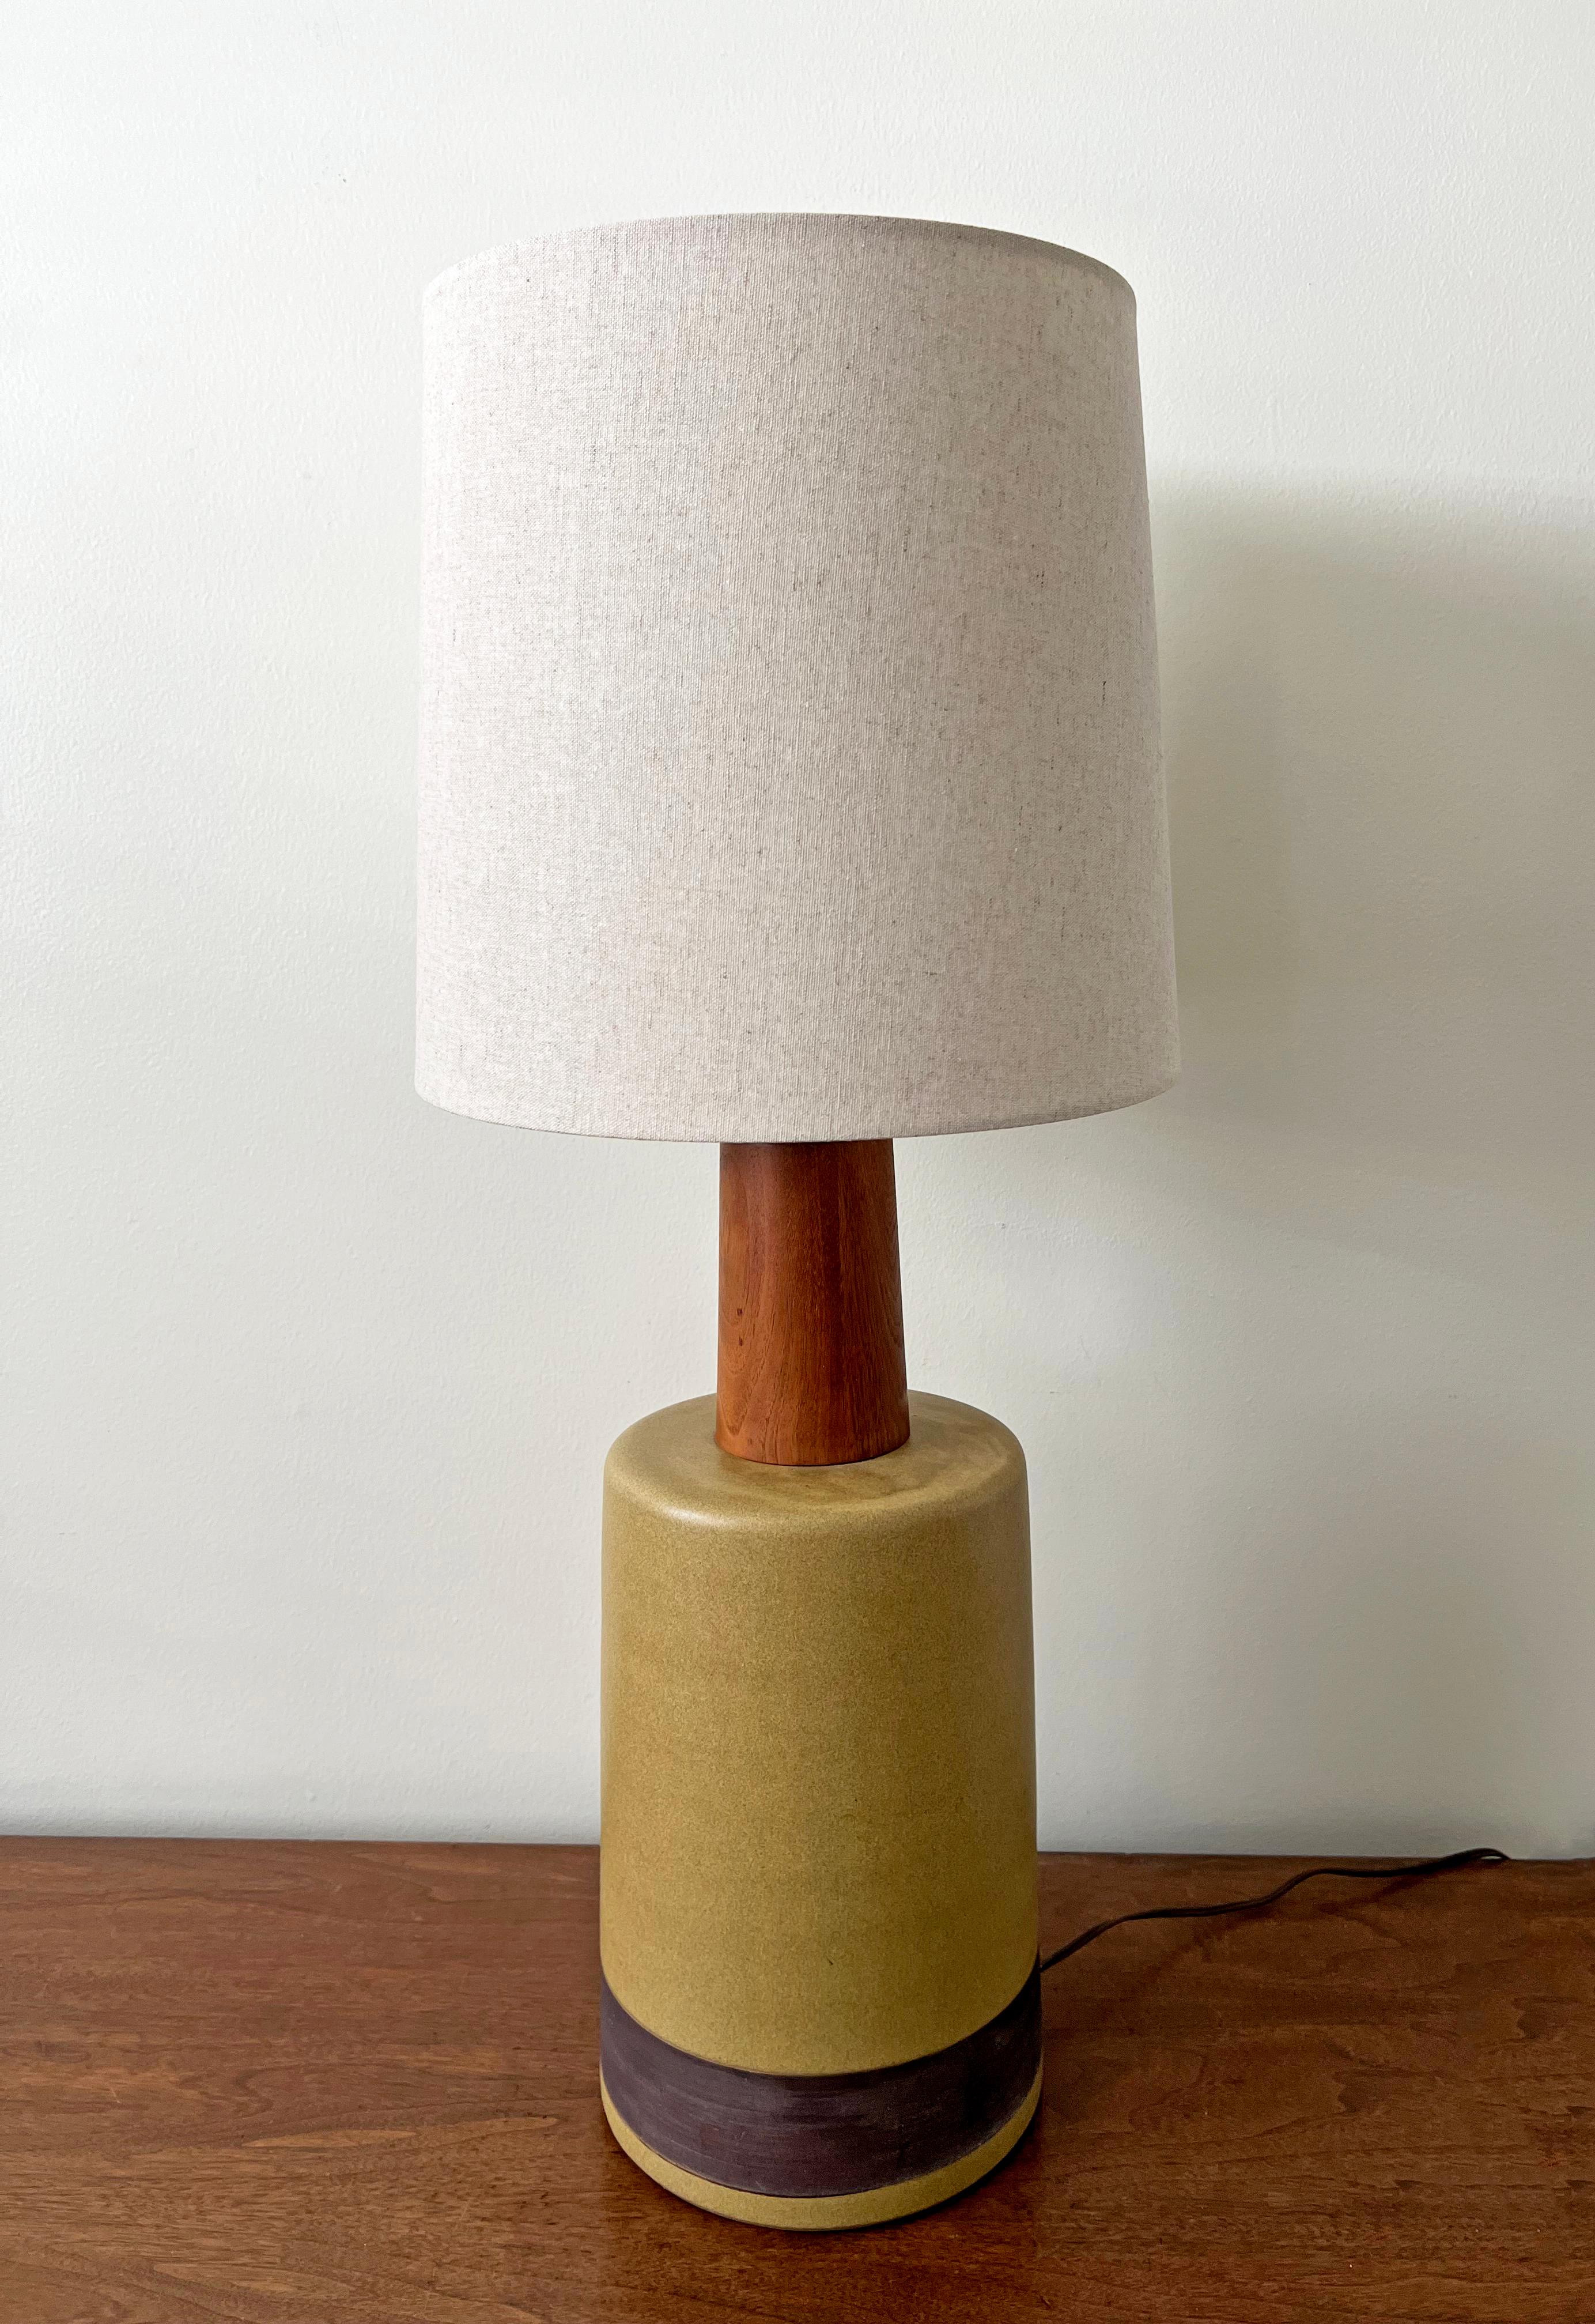 Nous vous proposons une grande lampe de table à glaçure mate mouchetée d'ocre vert/jaune, conçue par le duo mari et femme Jane & Gordon Martz. Produit par Marshall Studios, Indianapolis, 1960.

Vendu sans abat-jour. Les dimensions indiquées dans